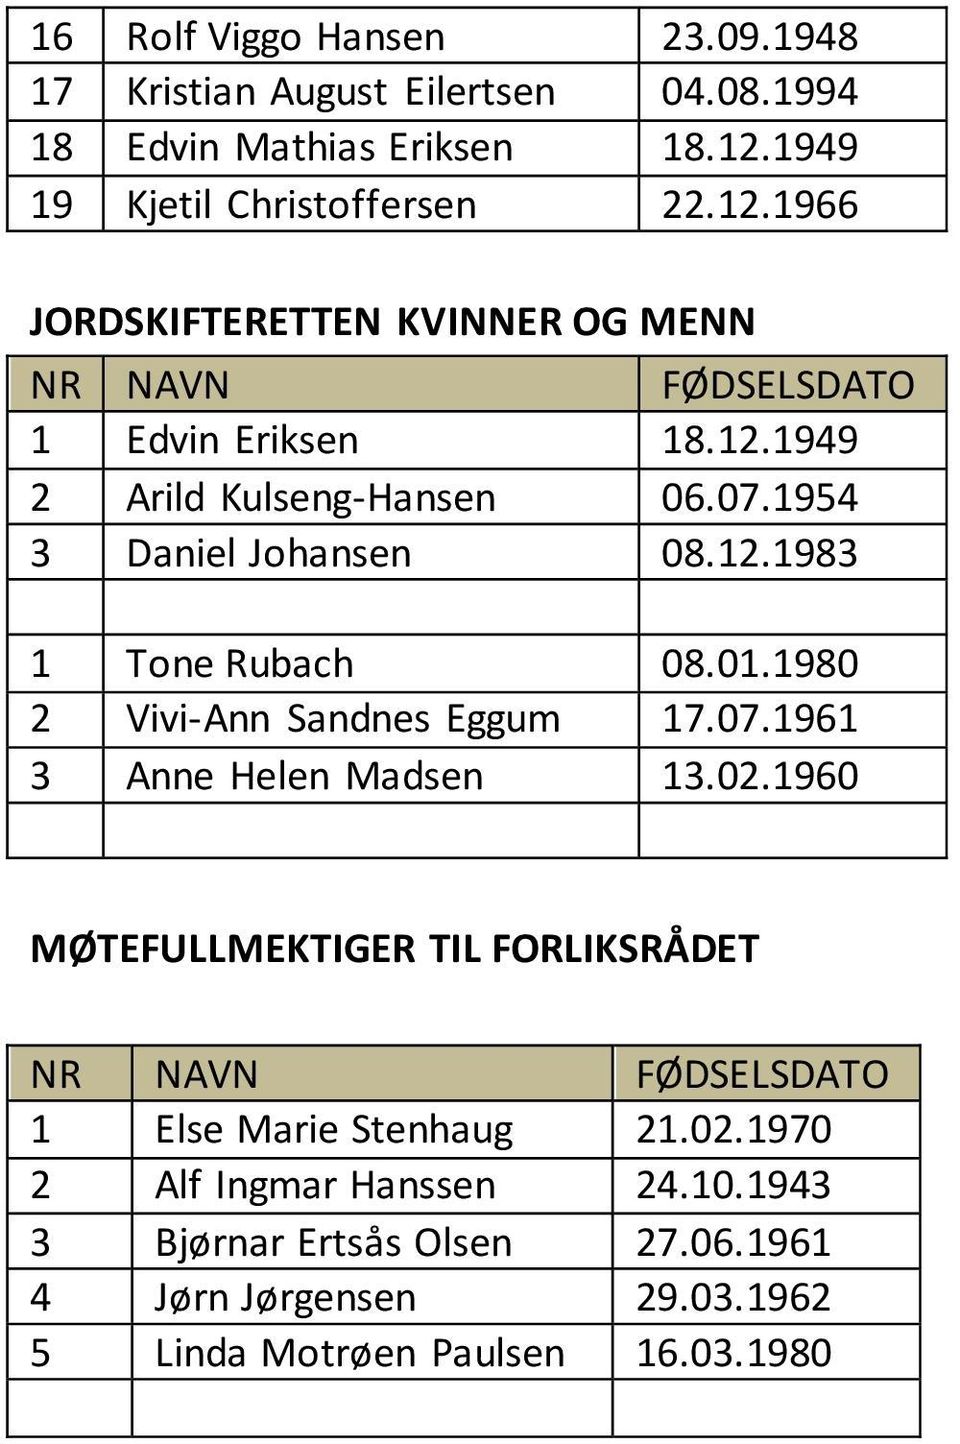 1954 3 Daniel Johansen 08.12.1983 1 Tone Rubach 08.01.1980 2 Vivi-Ann Sandnes Eggum 17.07.1961 3 Anne Helen Madsen 13.02.